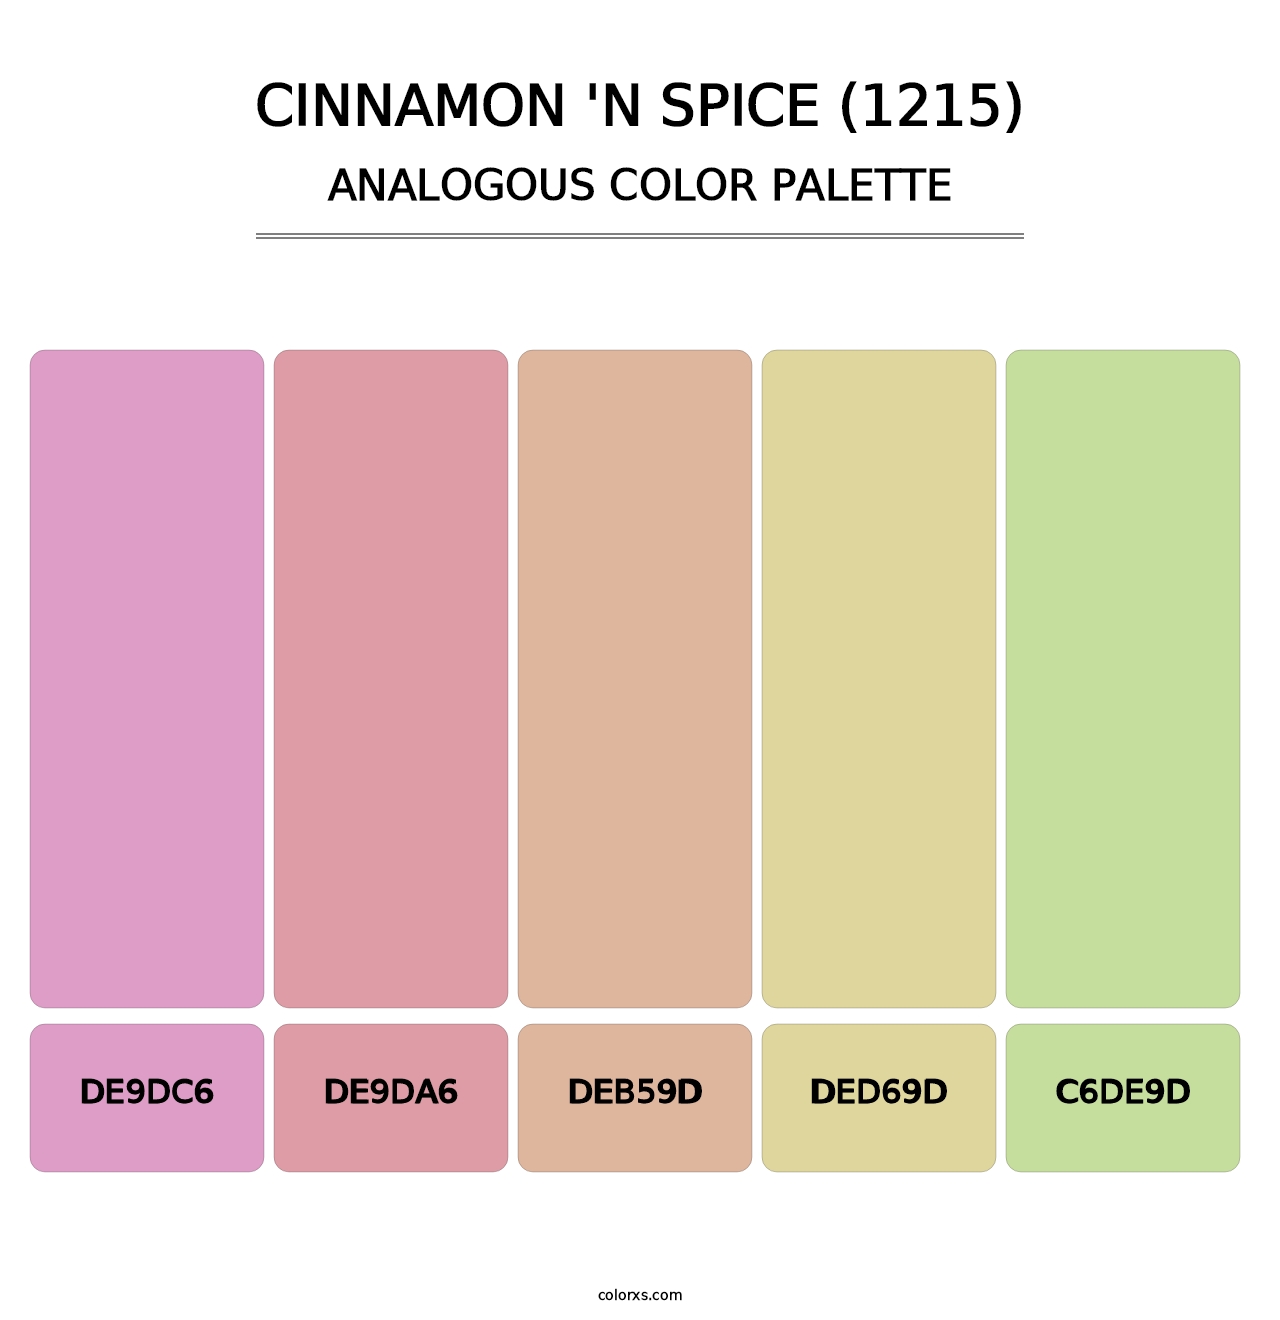 Cinnamon 'n Spice (1215) - Analogous Color Palette